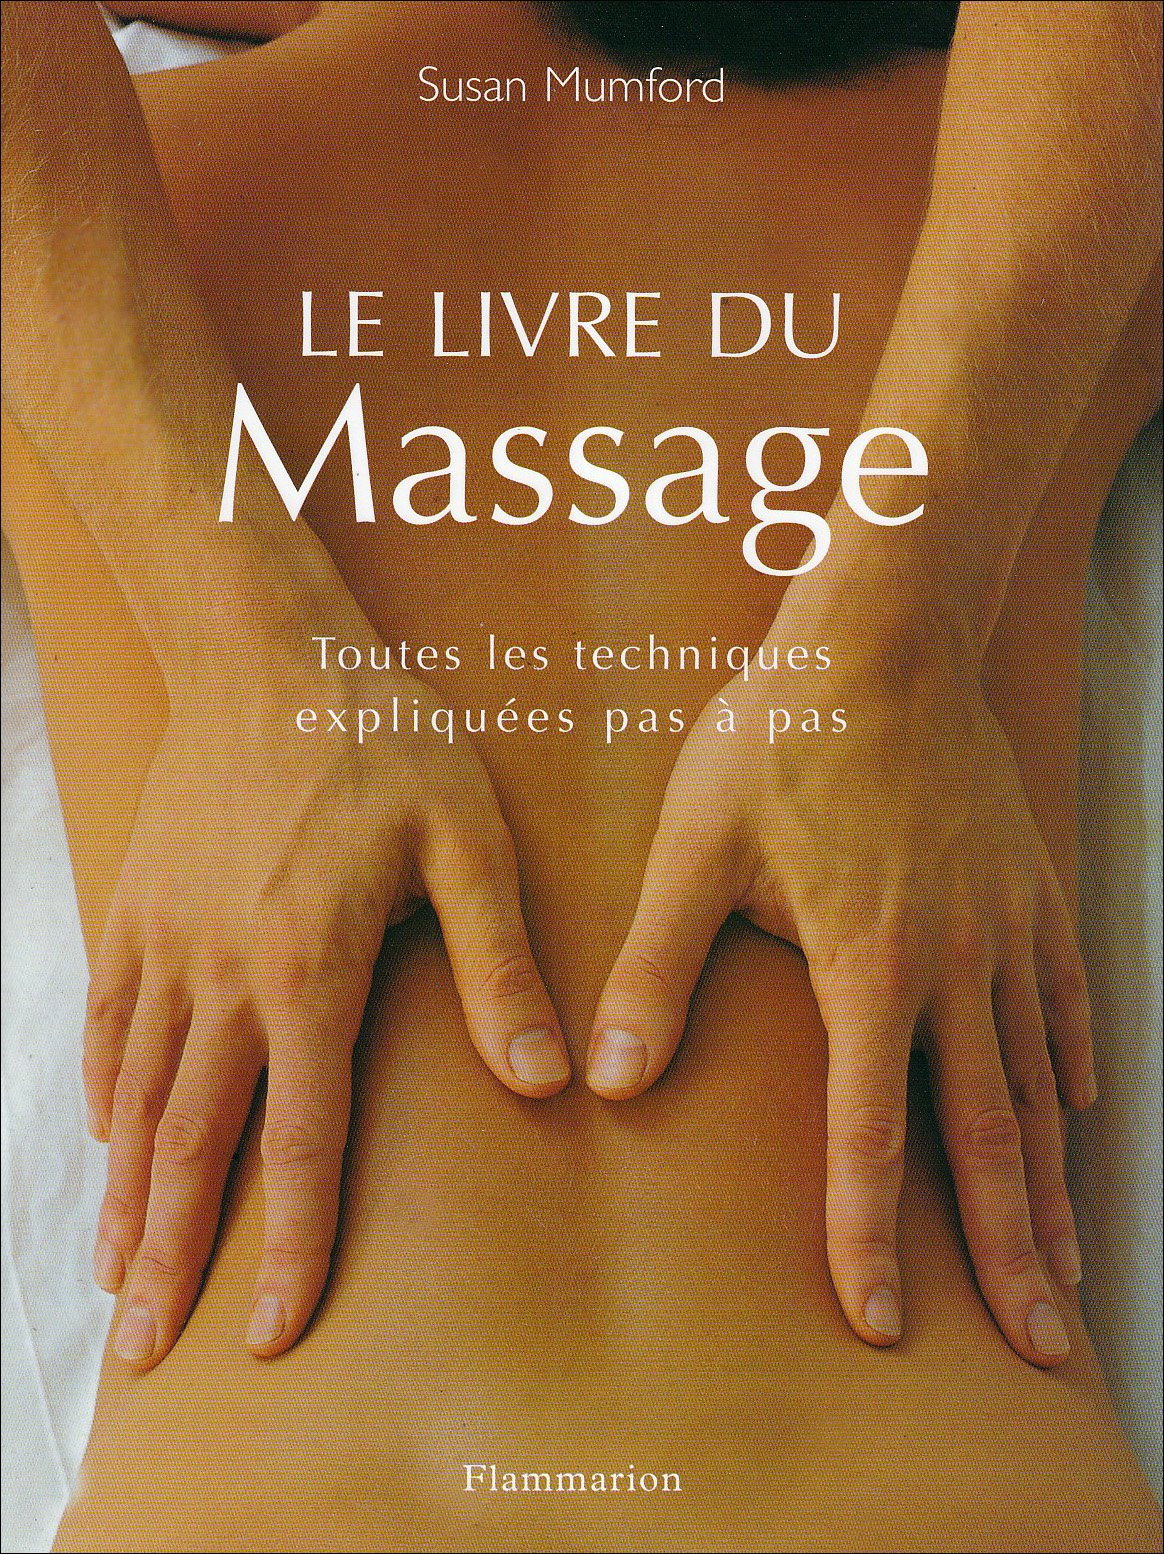 Le livre du massage - Susan Mumford